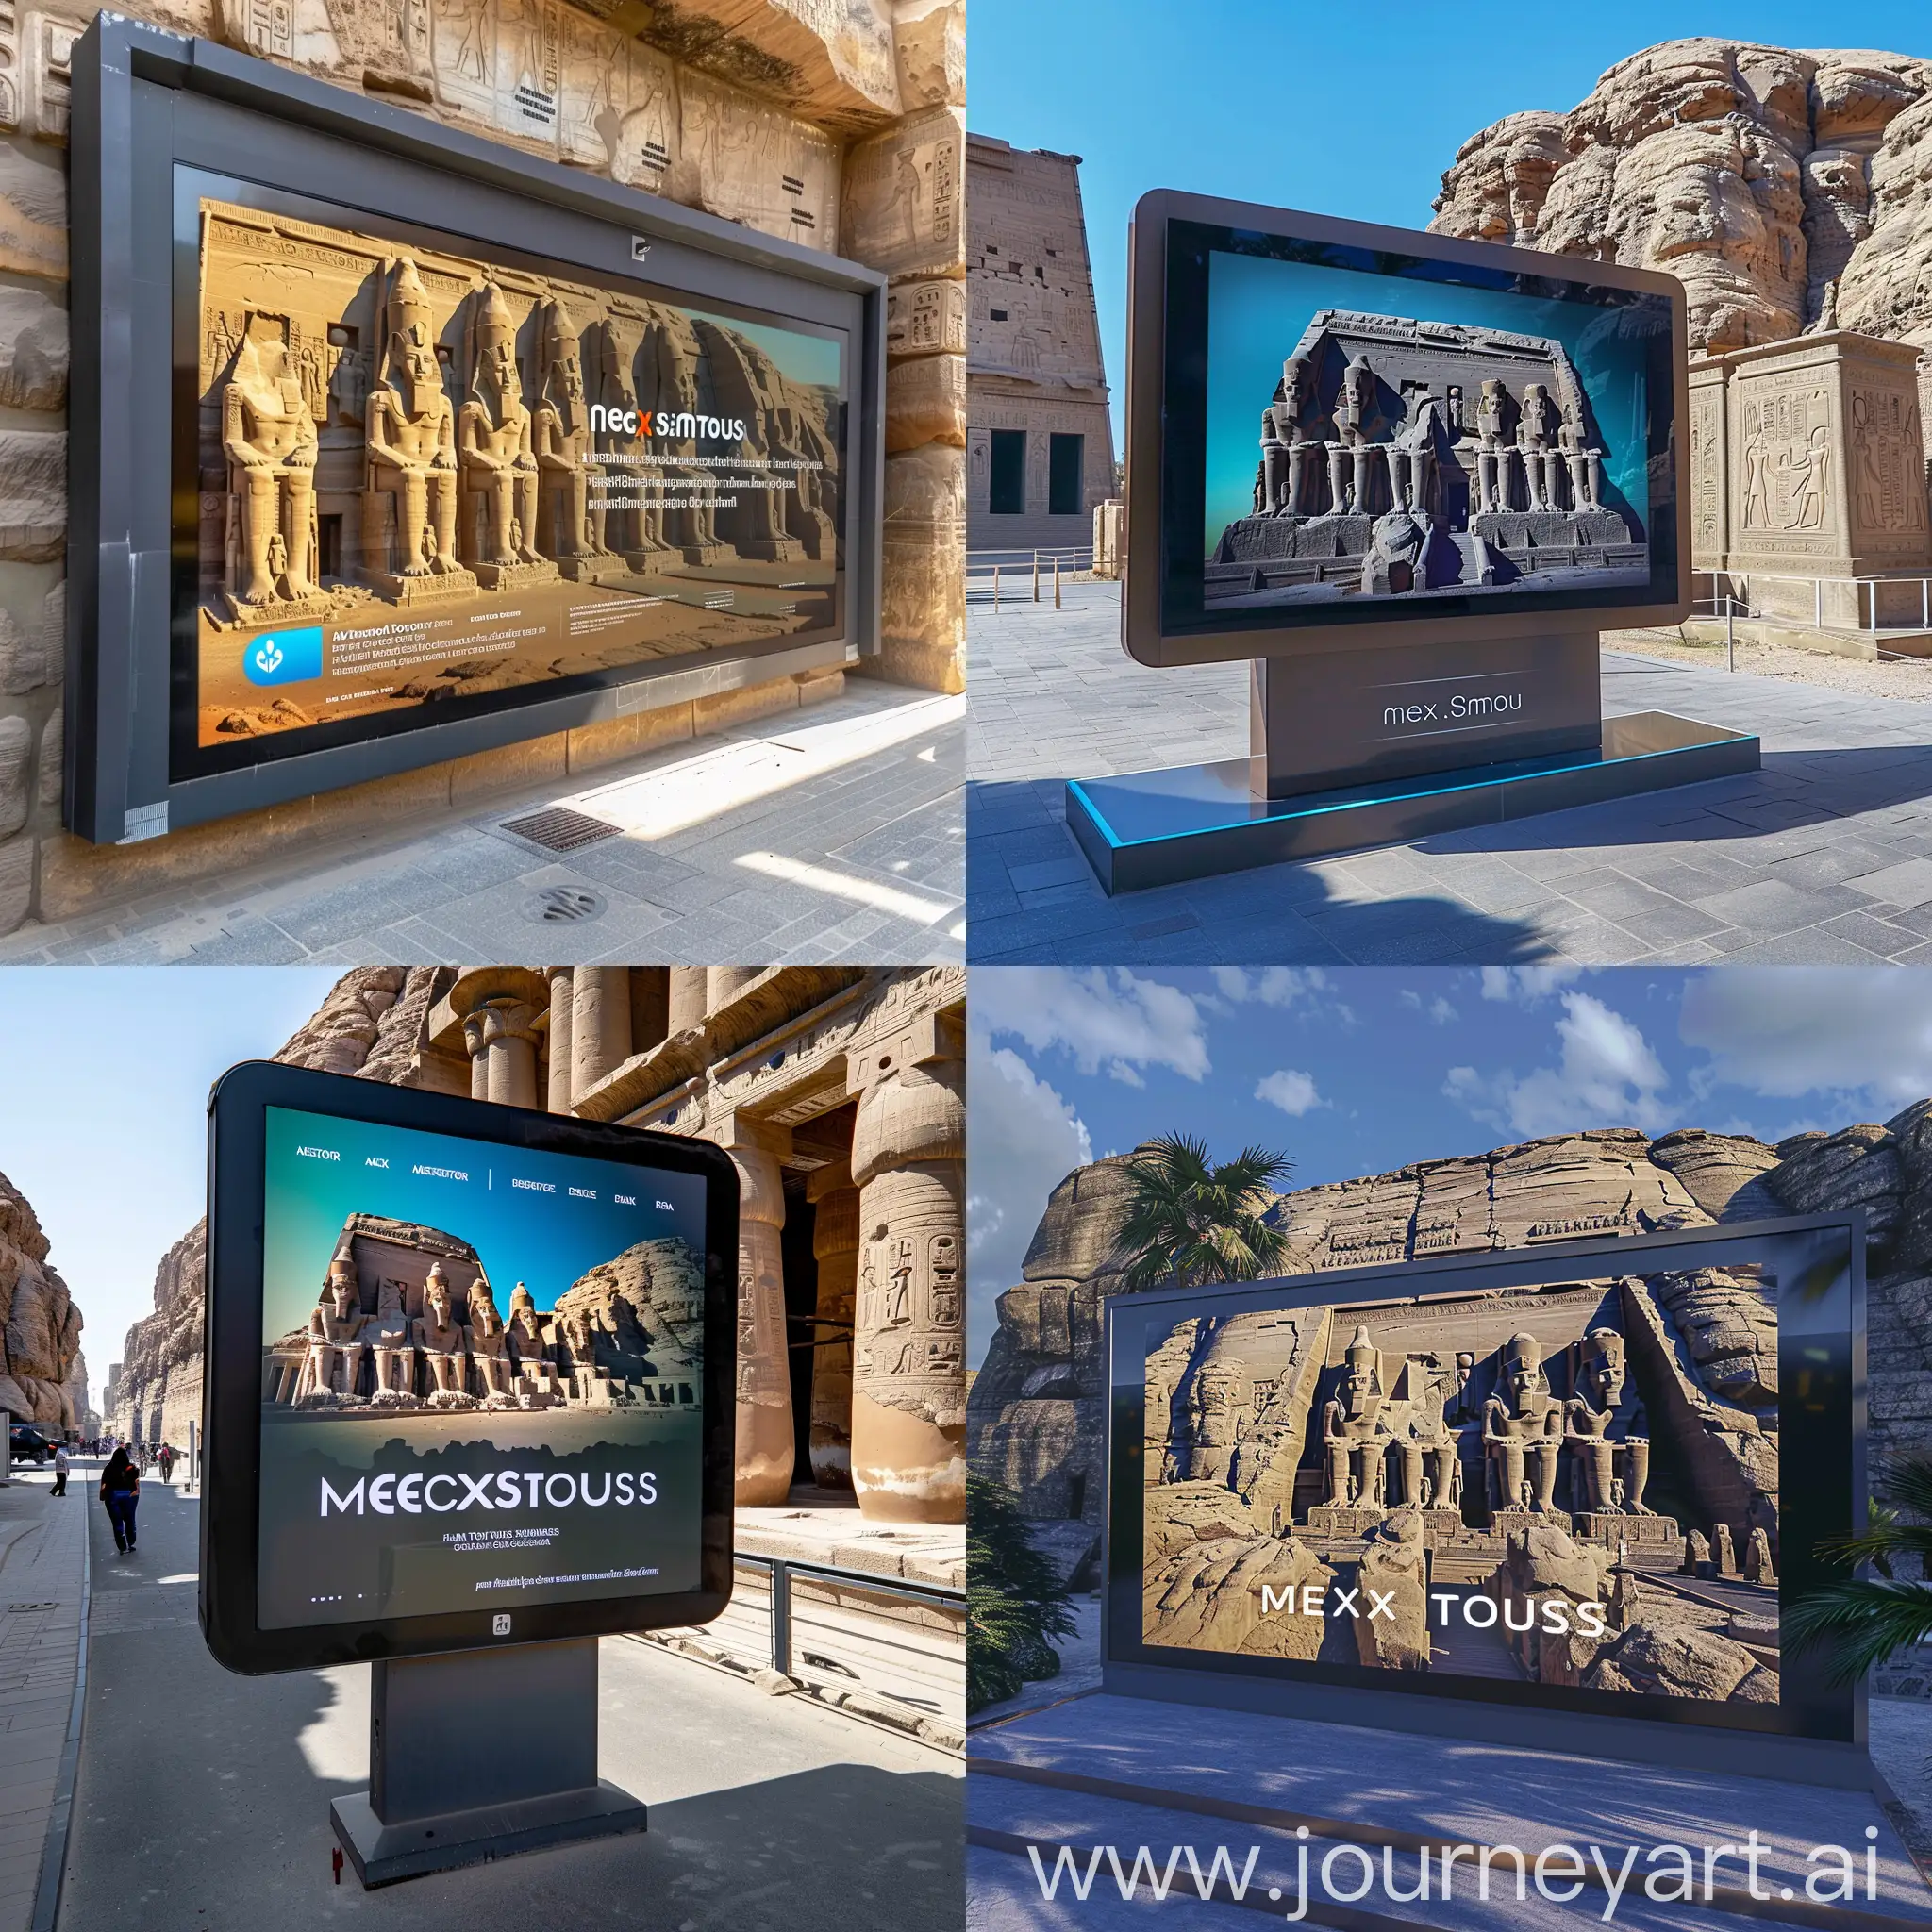 لوحة اعلانية لمركز سياحى Meta Tours 
 لعرض معالم معبد أبو سمبل بتقنية الواقع الافتراضى 